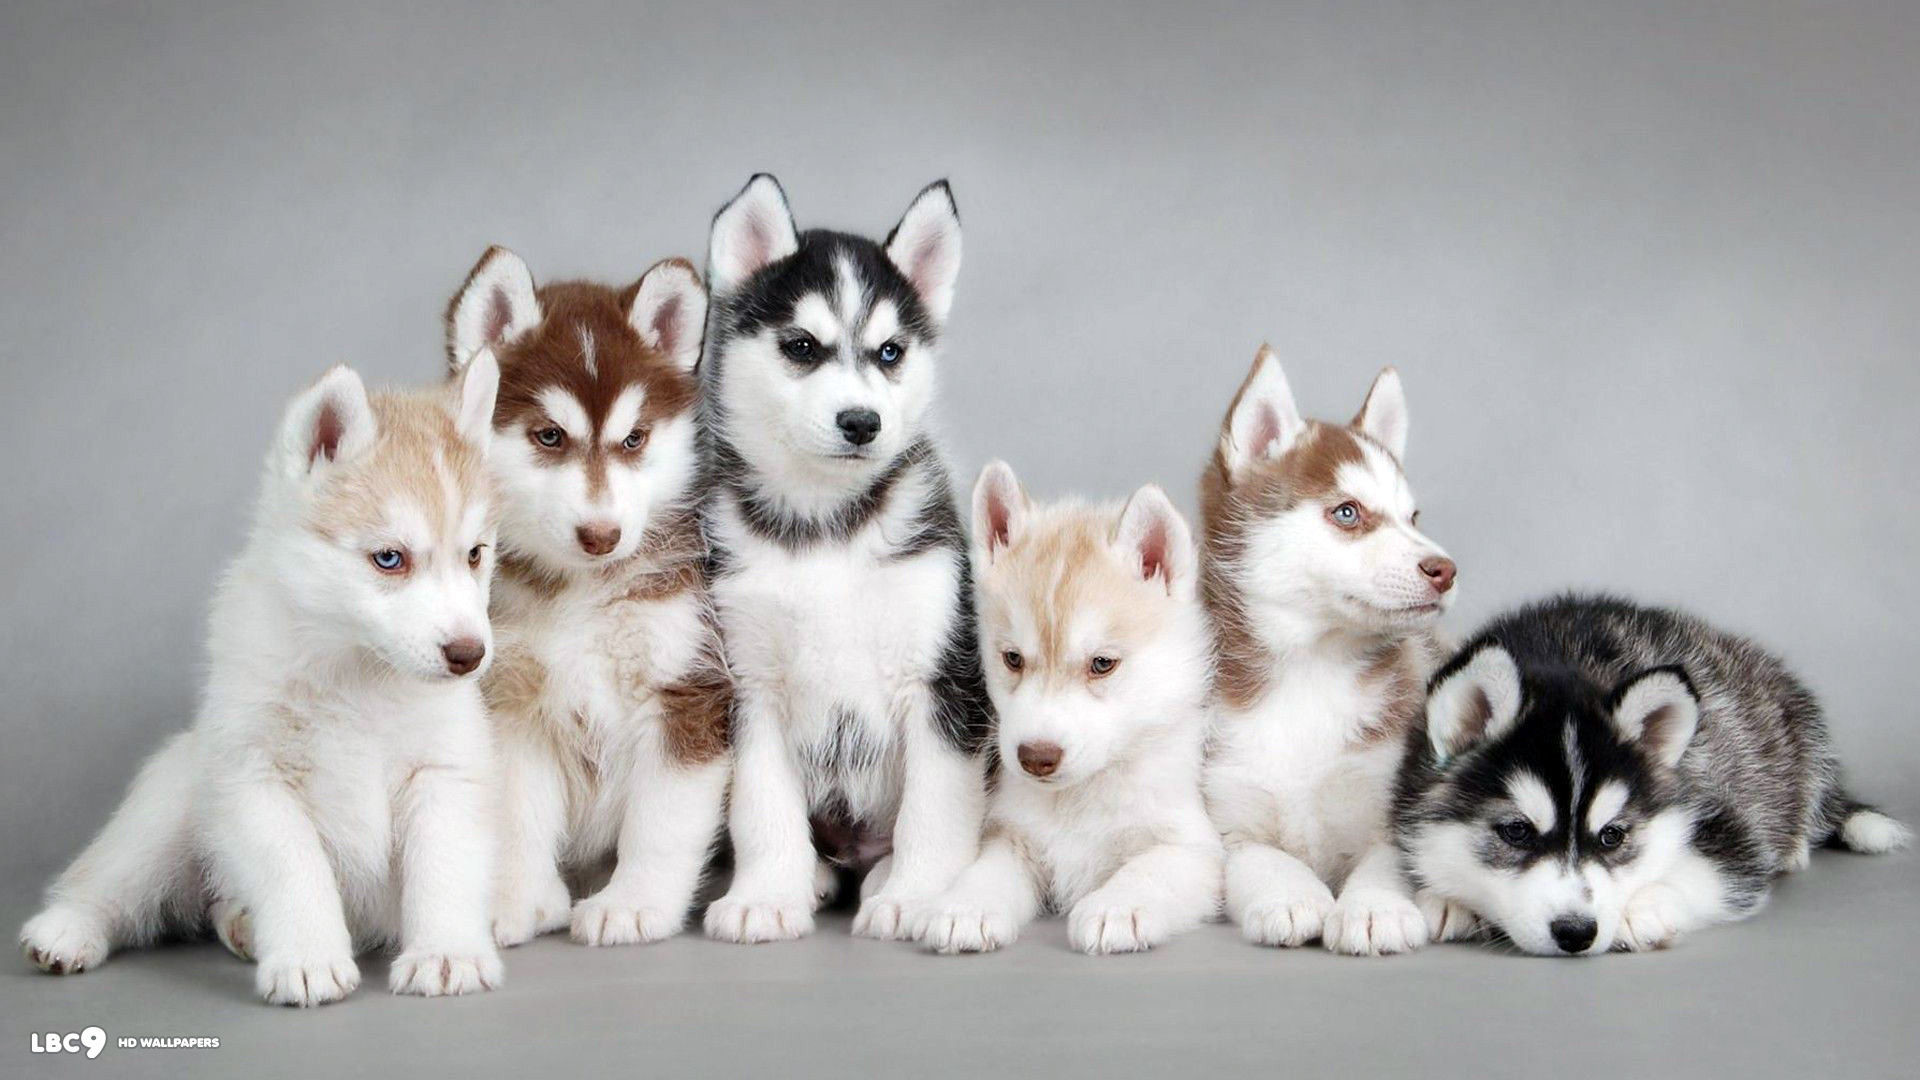 1920x1080 cute husky puppies in snow wallpaper desktop background